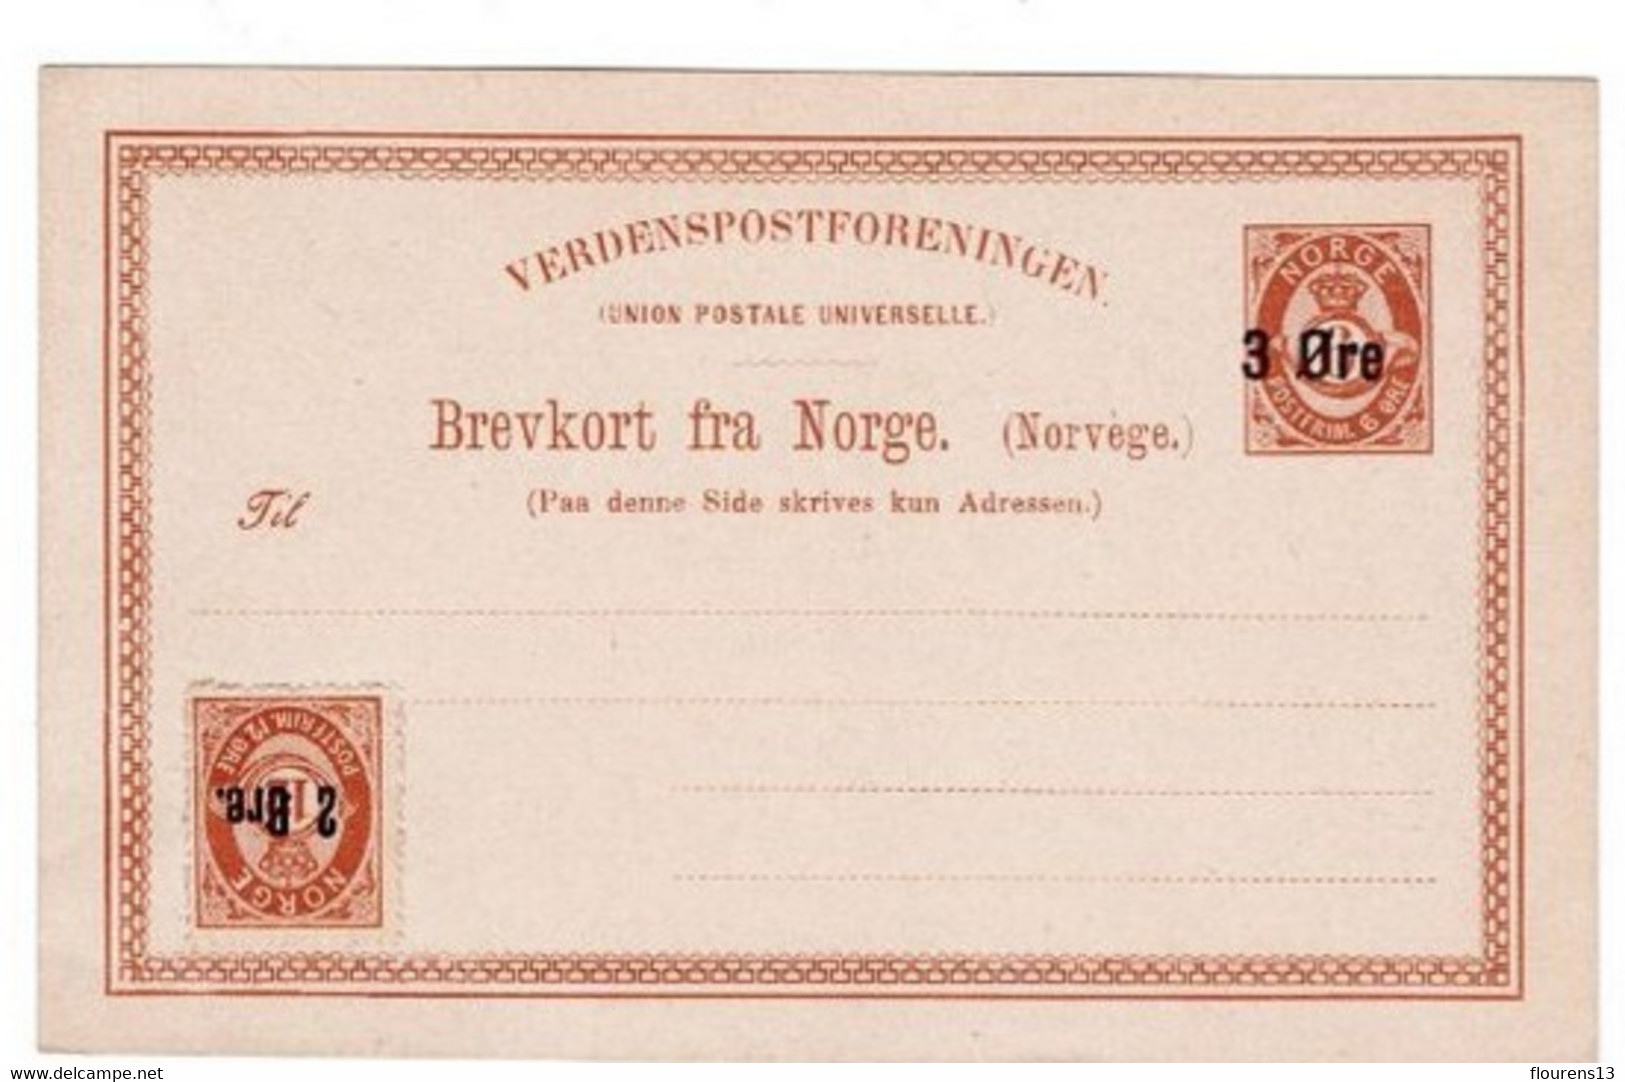 Norvège > Entiers Postaux:1888 Carte Postale De Norvège 3 øre Sur 6 øre + COMPLEMENT 6 / 12 ORE NEUVE TBE ENTIER POSTAL - Postwaardestukken